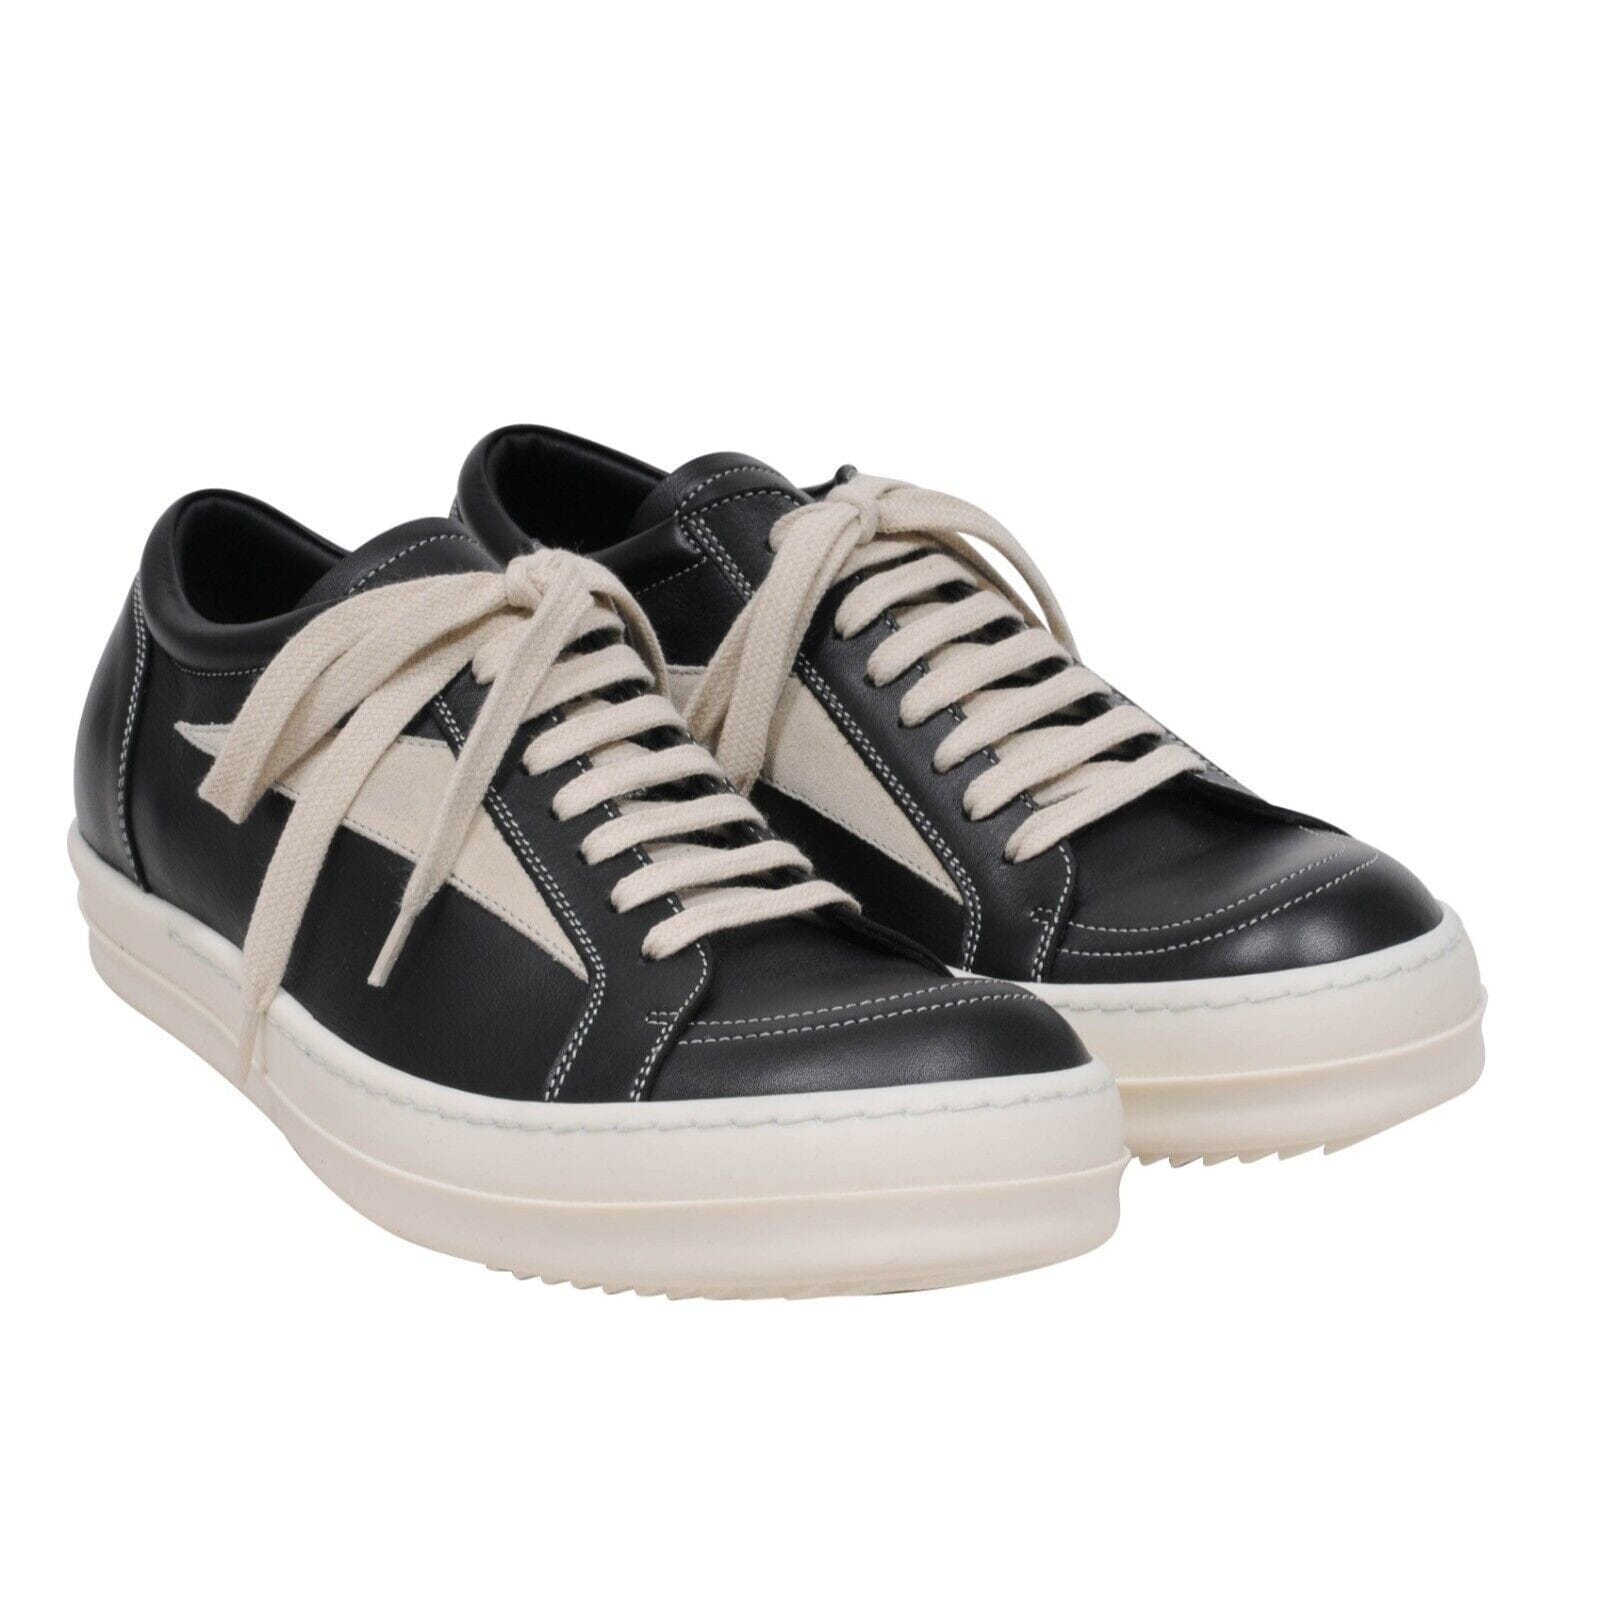 Strobe Vintage Low Top Sneakers Black White Mainline